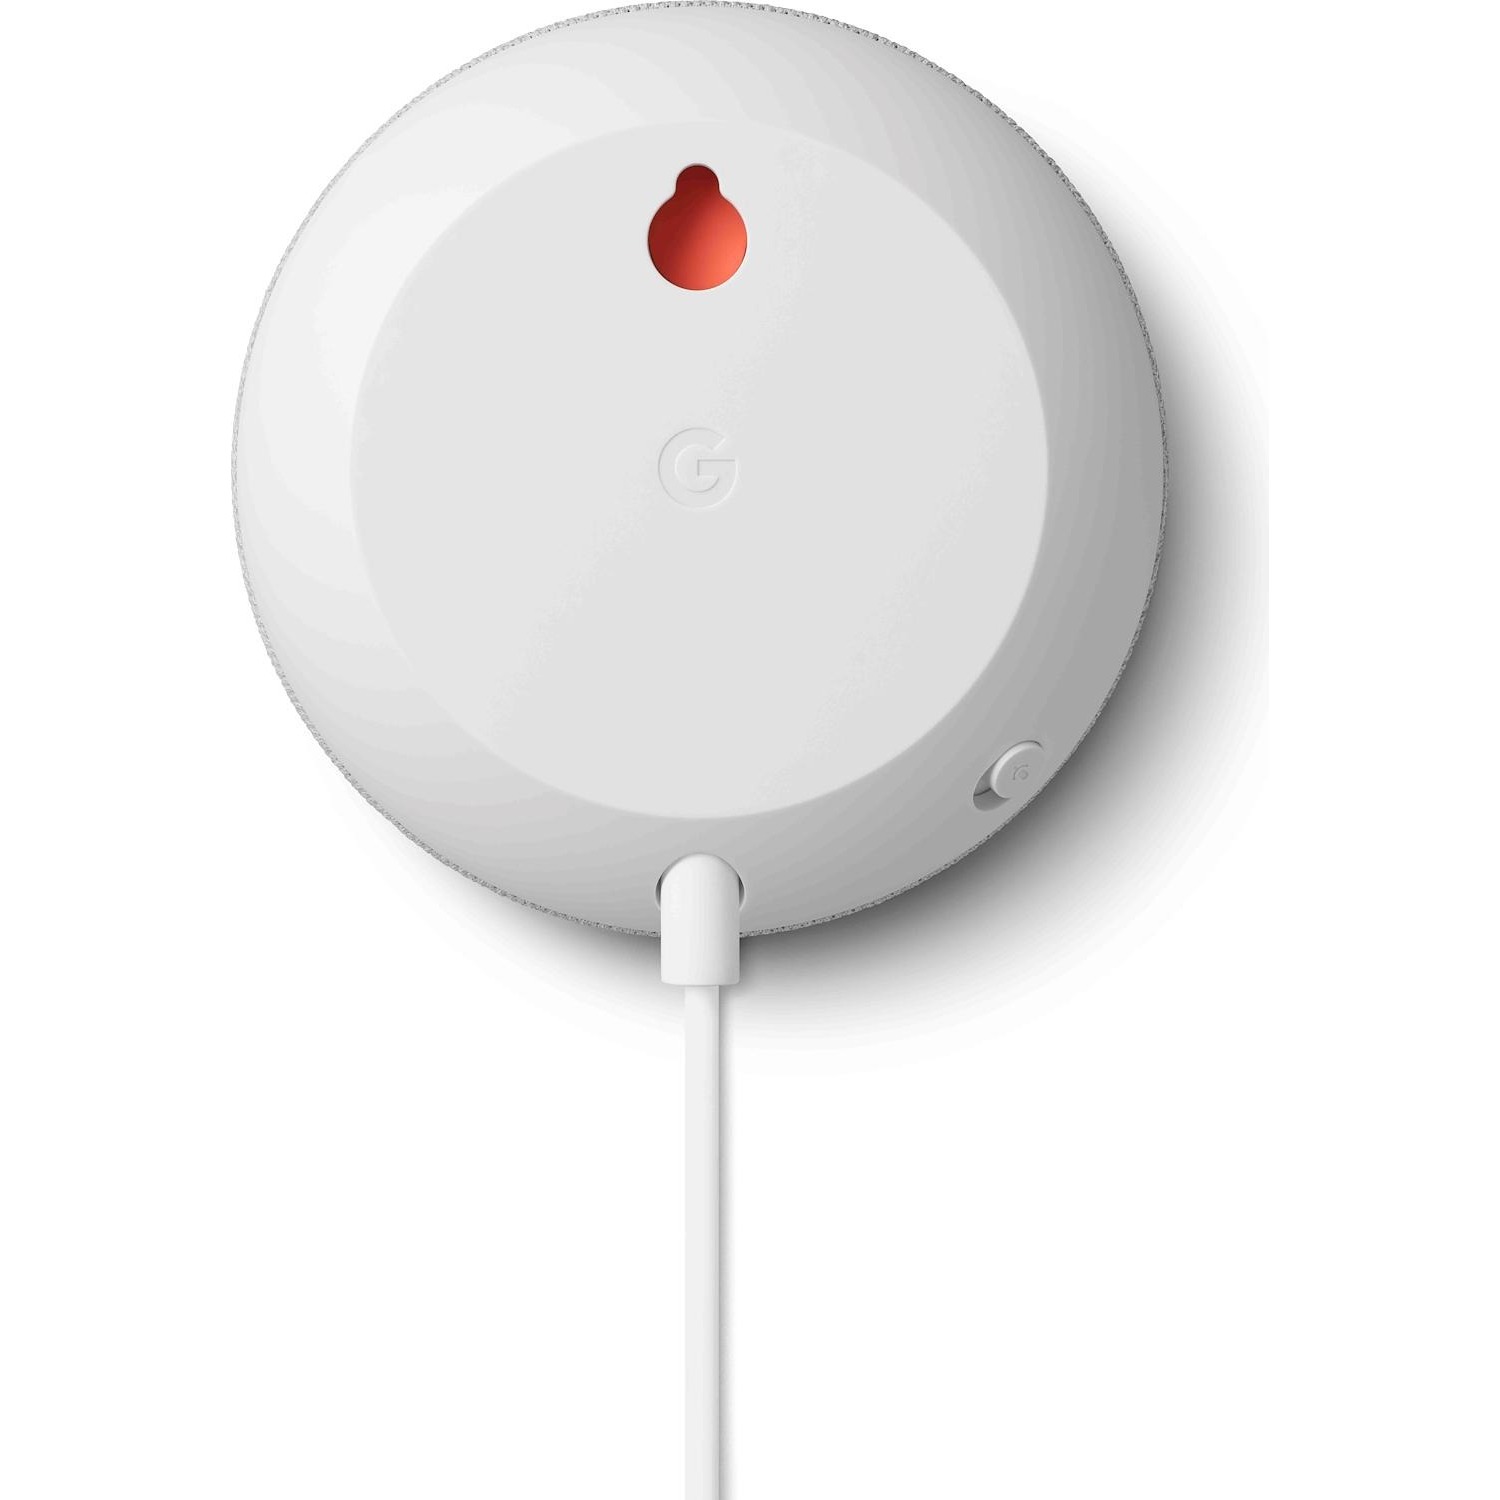 Assistente Google Nest mini white bianco - DIMOStore